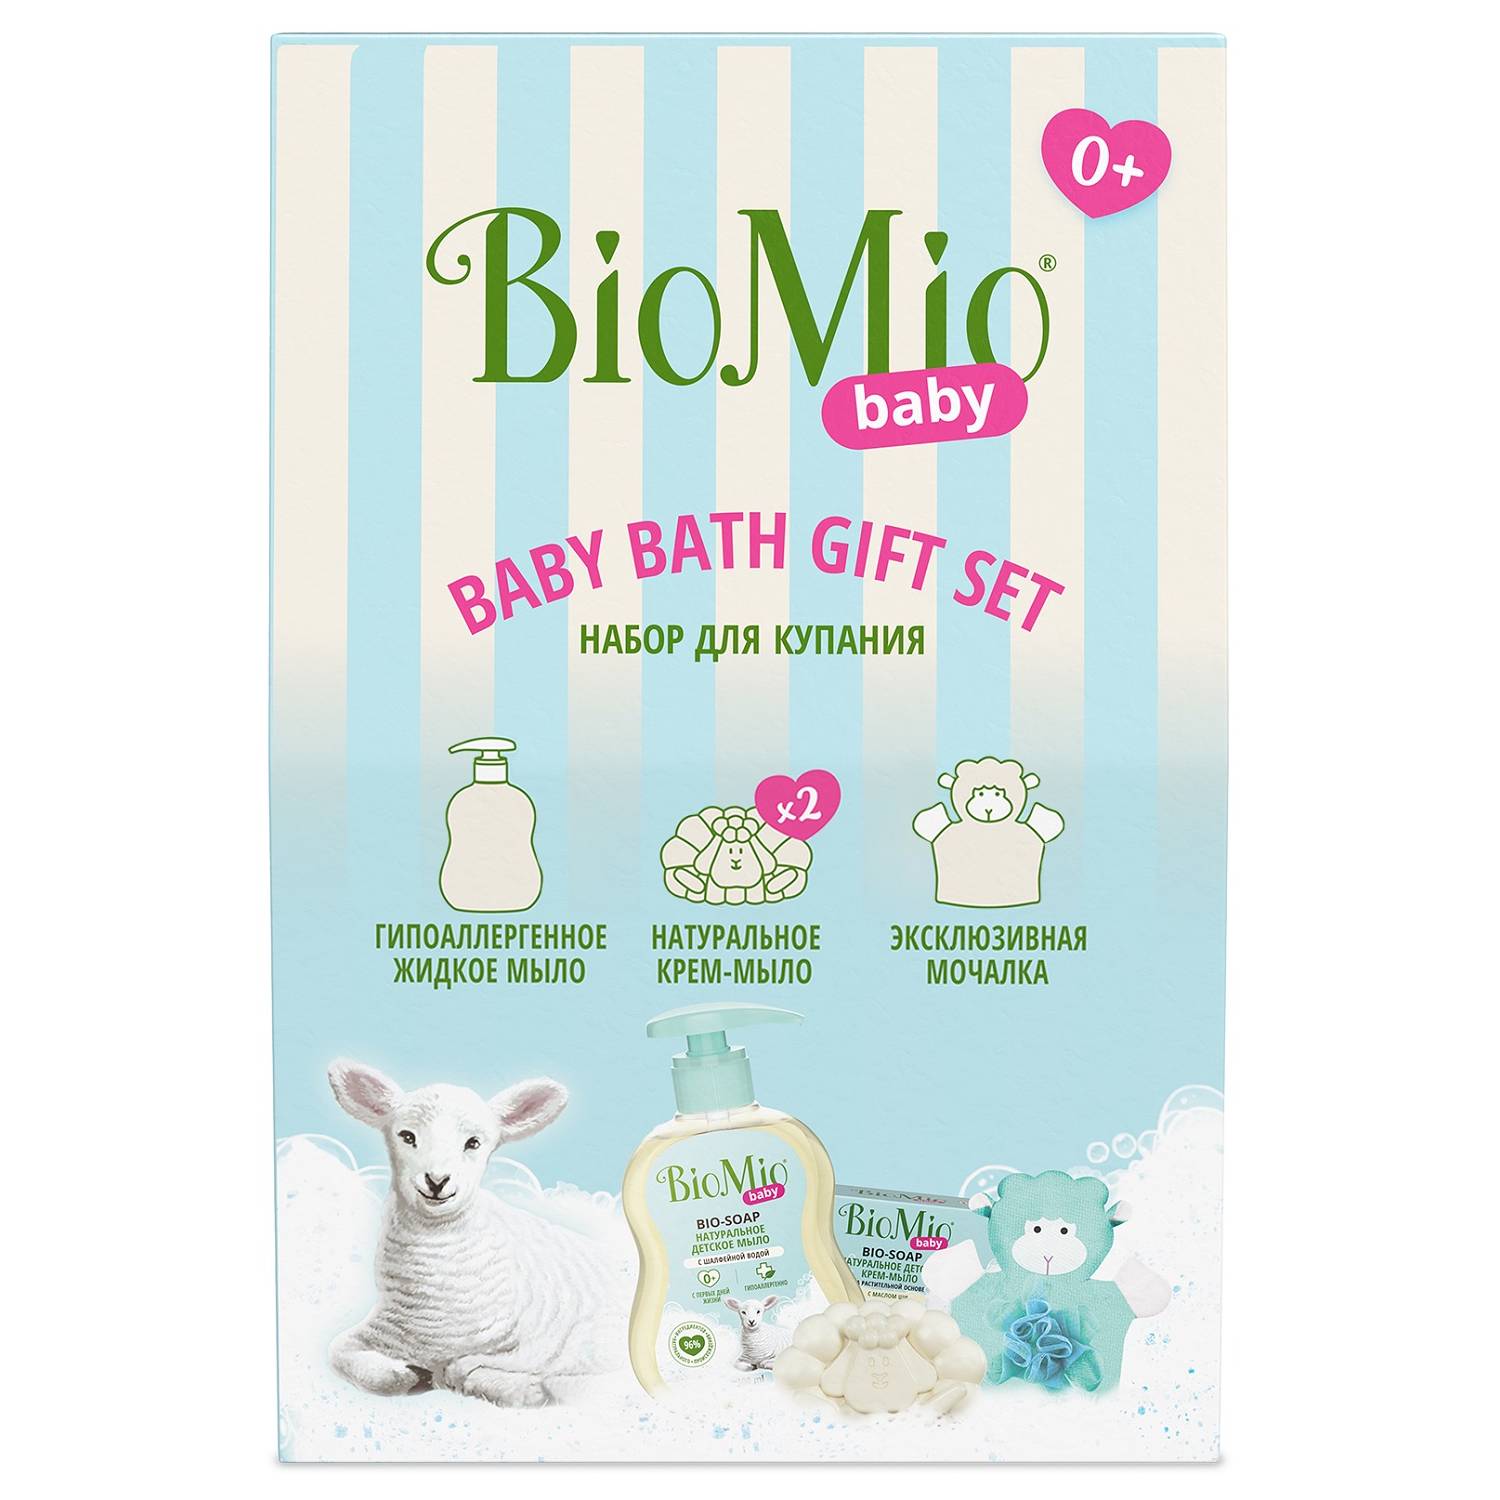 BioMio Детский набор для купания Baby 0+: жидкое мыло 300 мл + крем-мыло 90 г + мочалка (BioMio, Мыло) мыло крем детское biomio baby cream soap 90 г